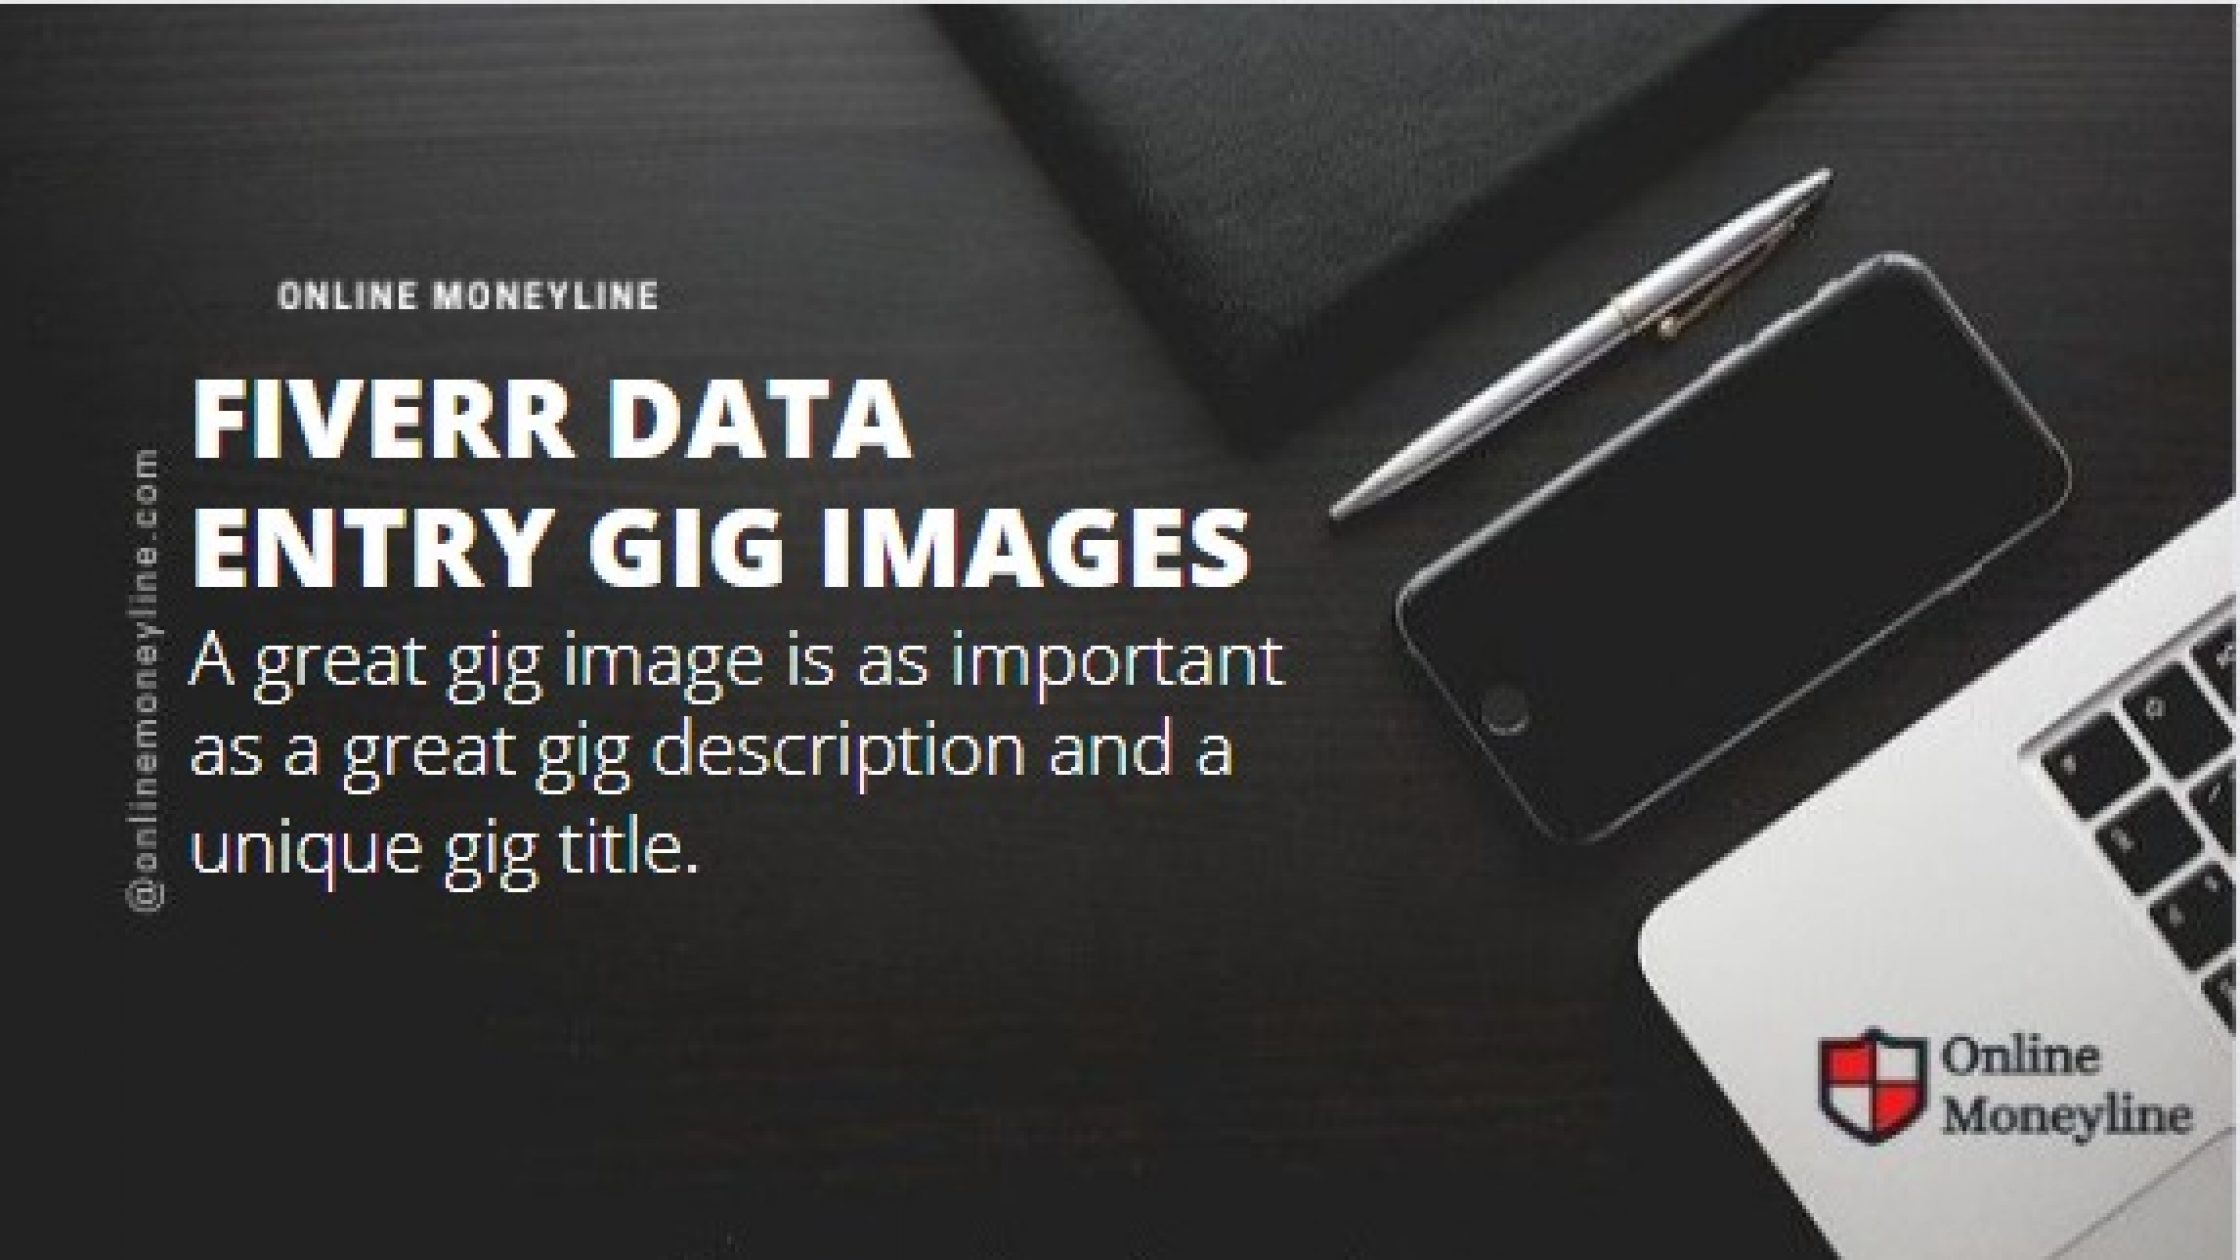 Fiverr Data Entry Gig Images